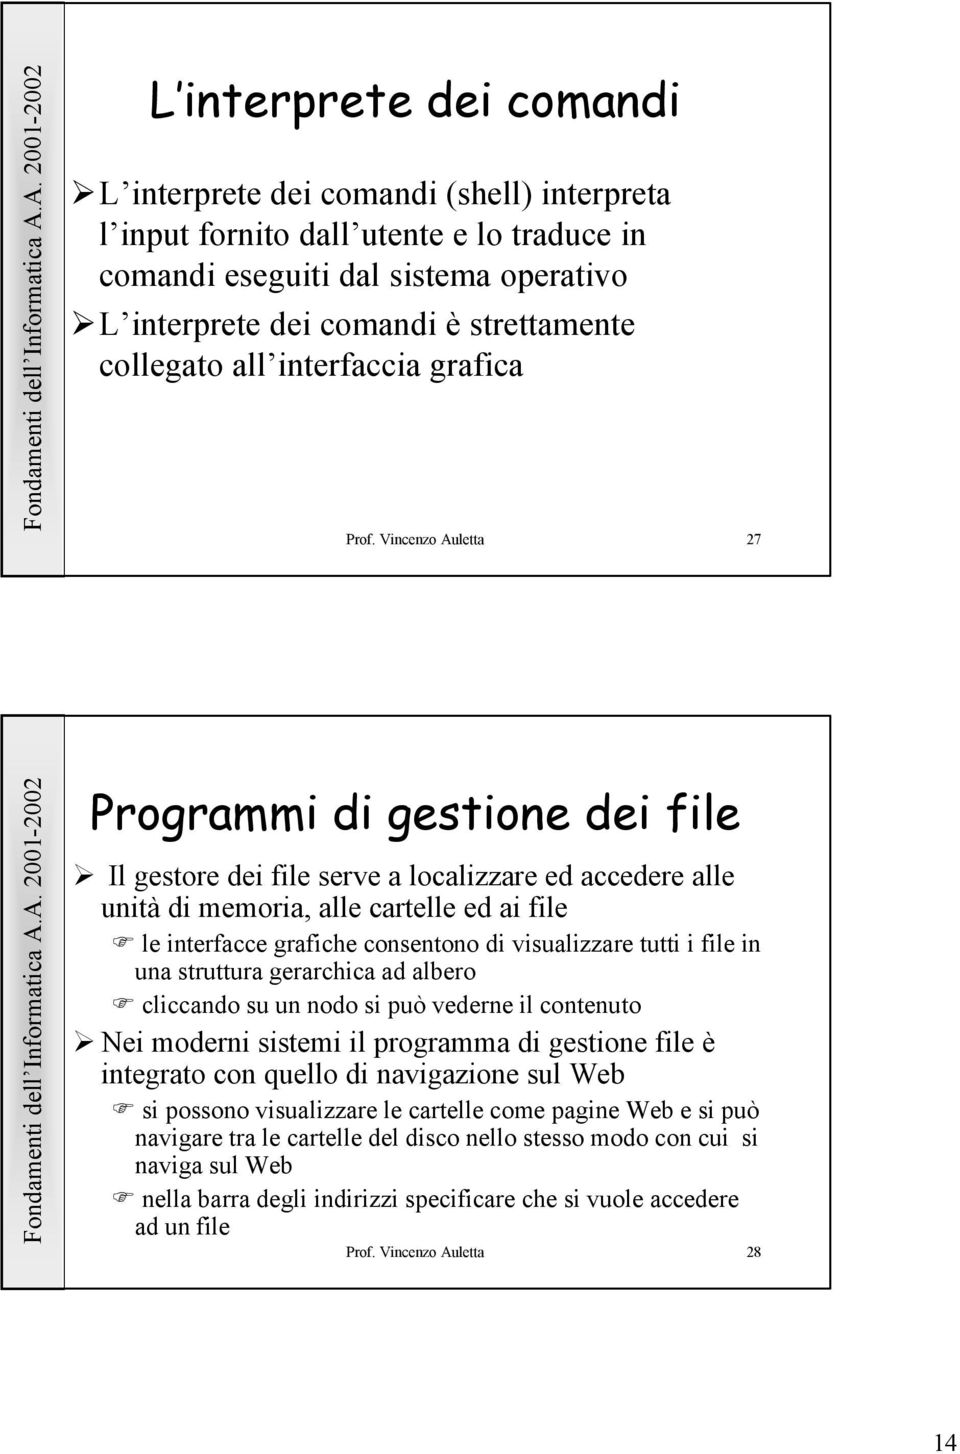 Vincenzo Auletta 27 Programmi di gestione dei file Il gestore dei file serve a localizzare ed accedere alle unità di memoria, alle cartelle ed ai file le interfacce grafiche consentono di